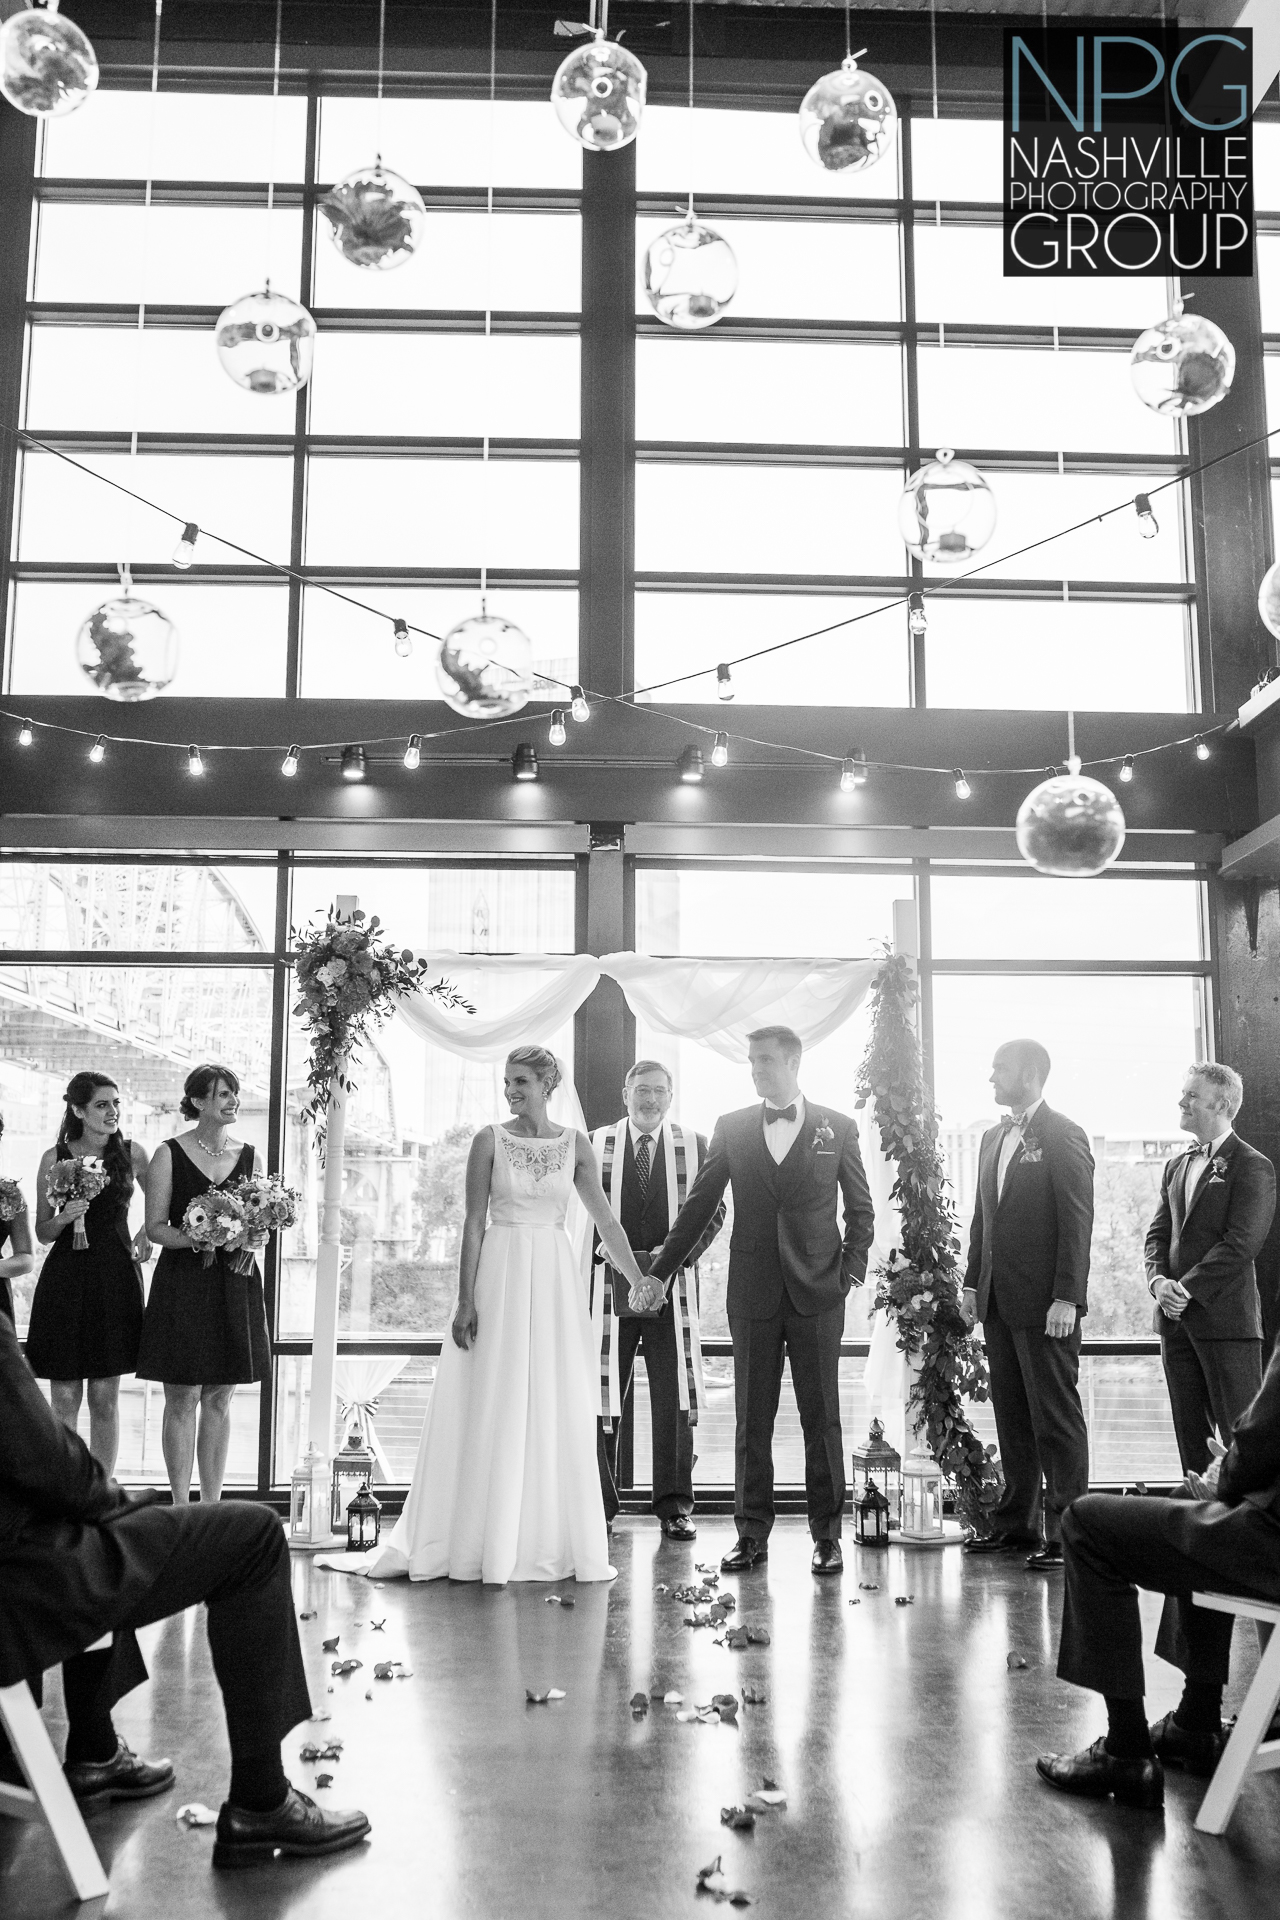 Nashville Photography Group - wedding photographers (3 of 3).jpg